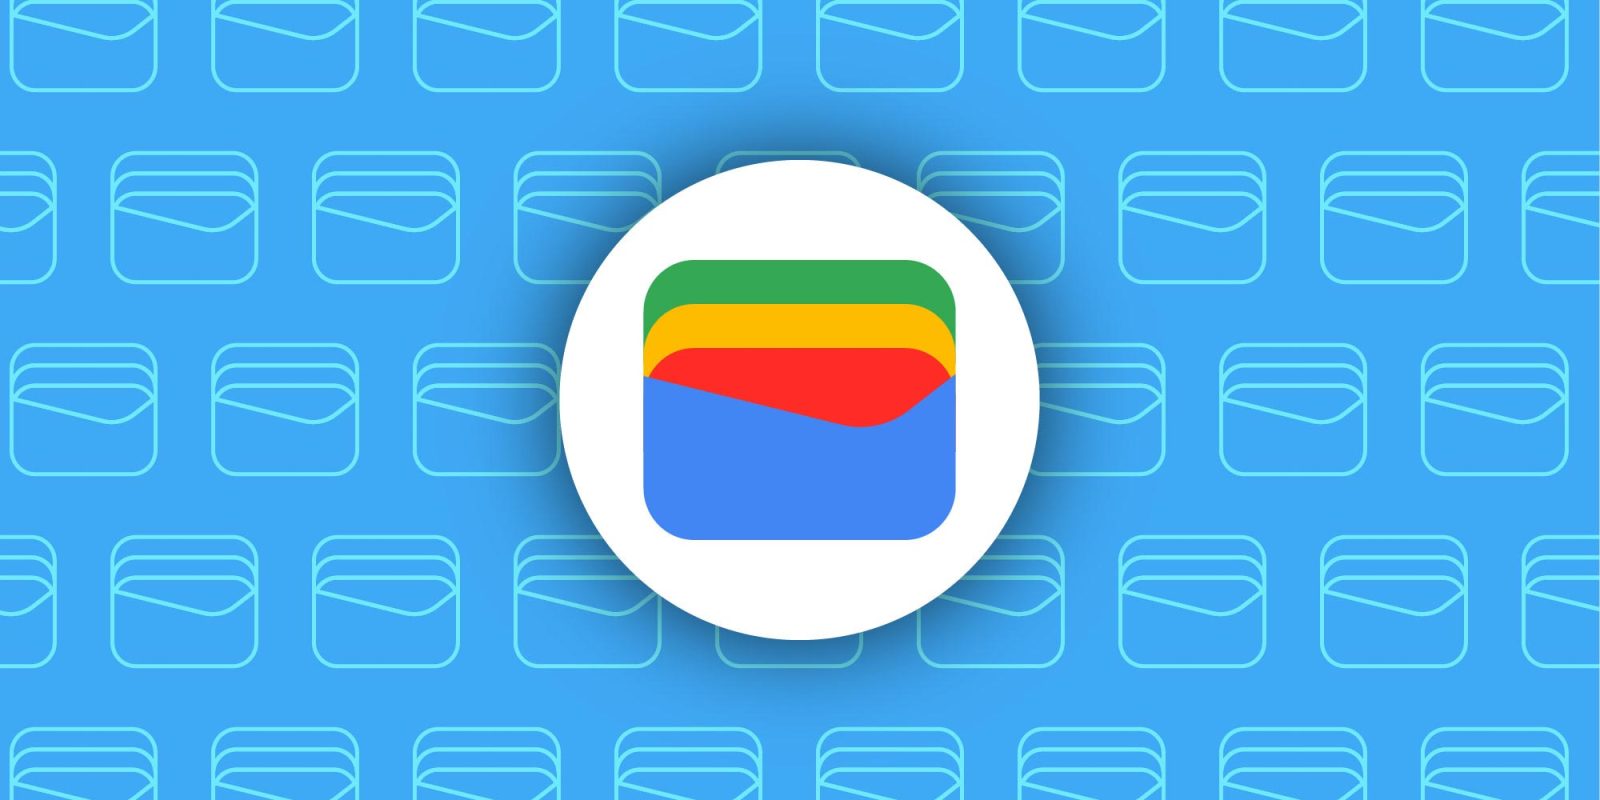 Google Wallet  Google for Developers